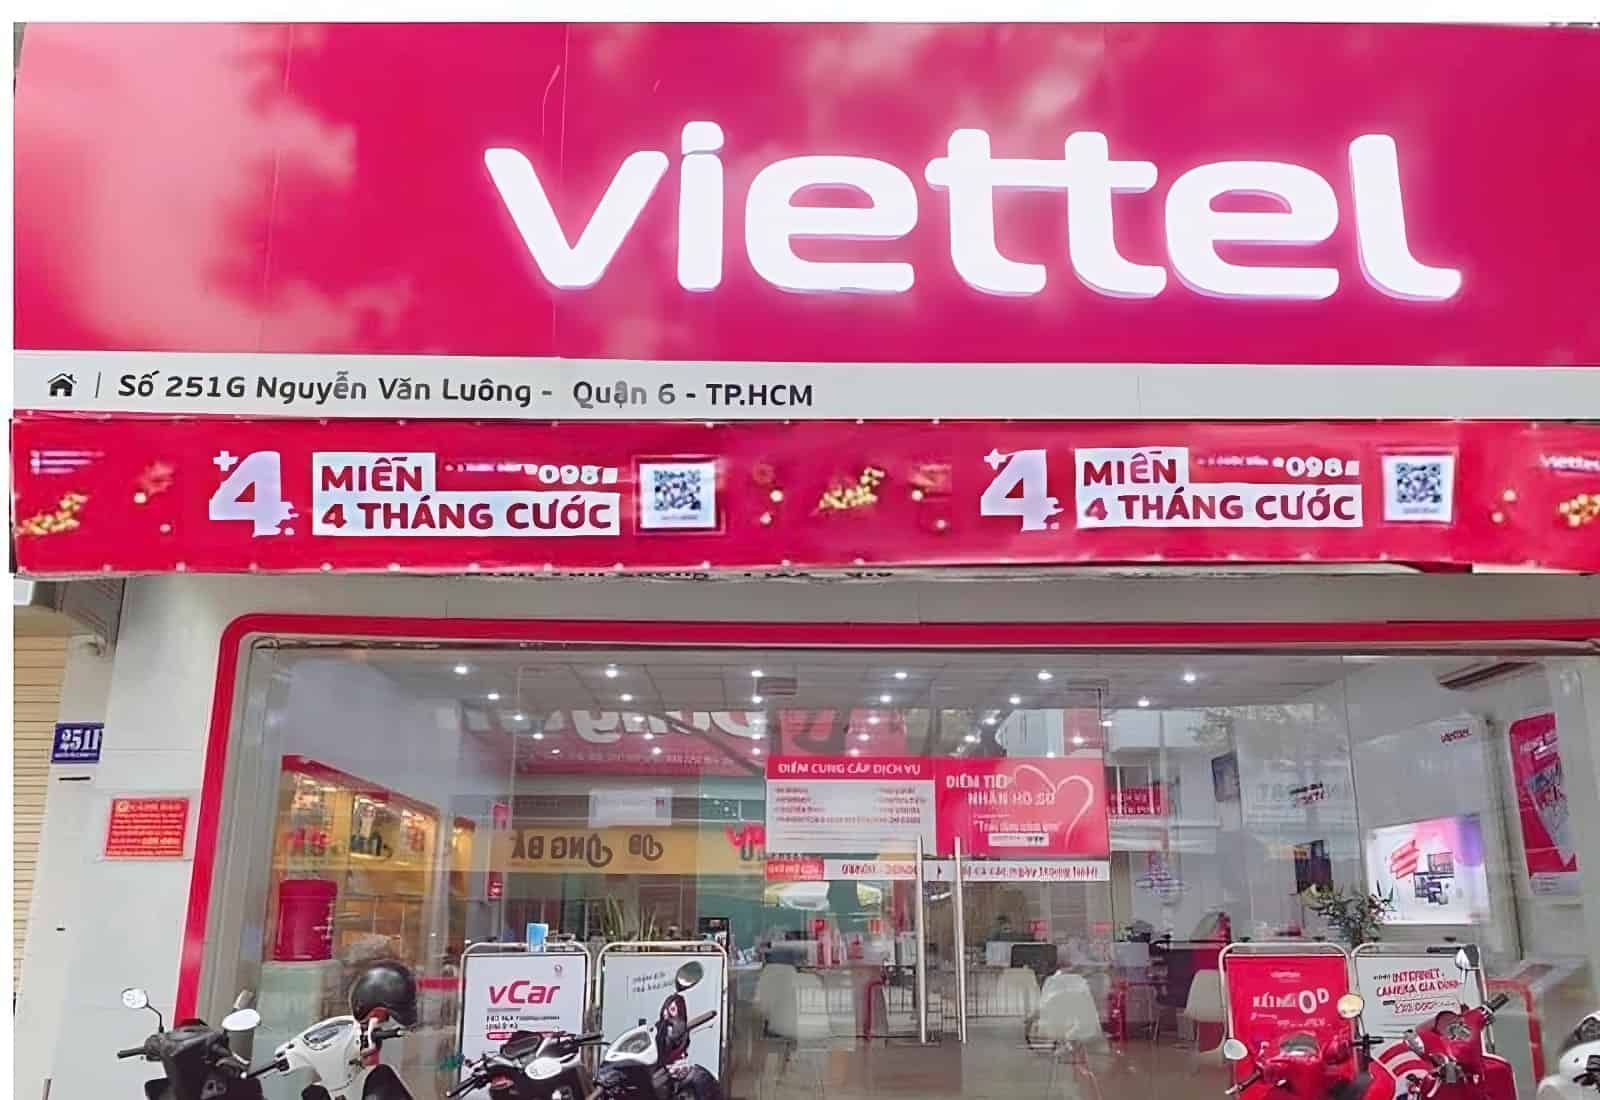 Cửa hàng Viettel quận 6 - Viettel Nguyễn Văn Luông